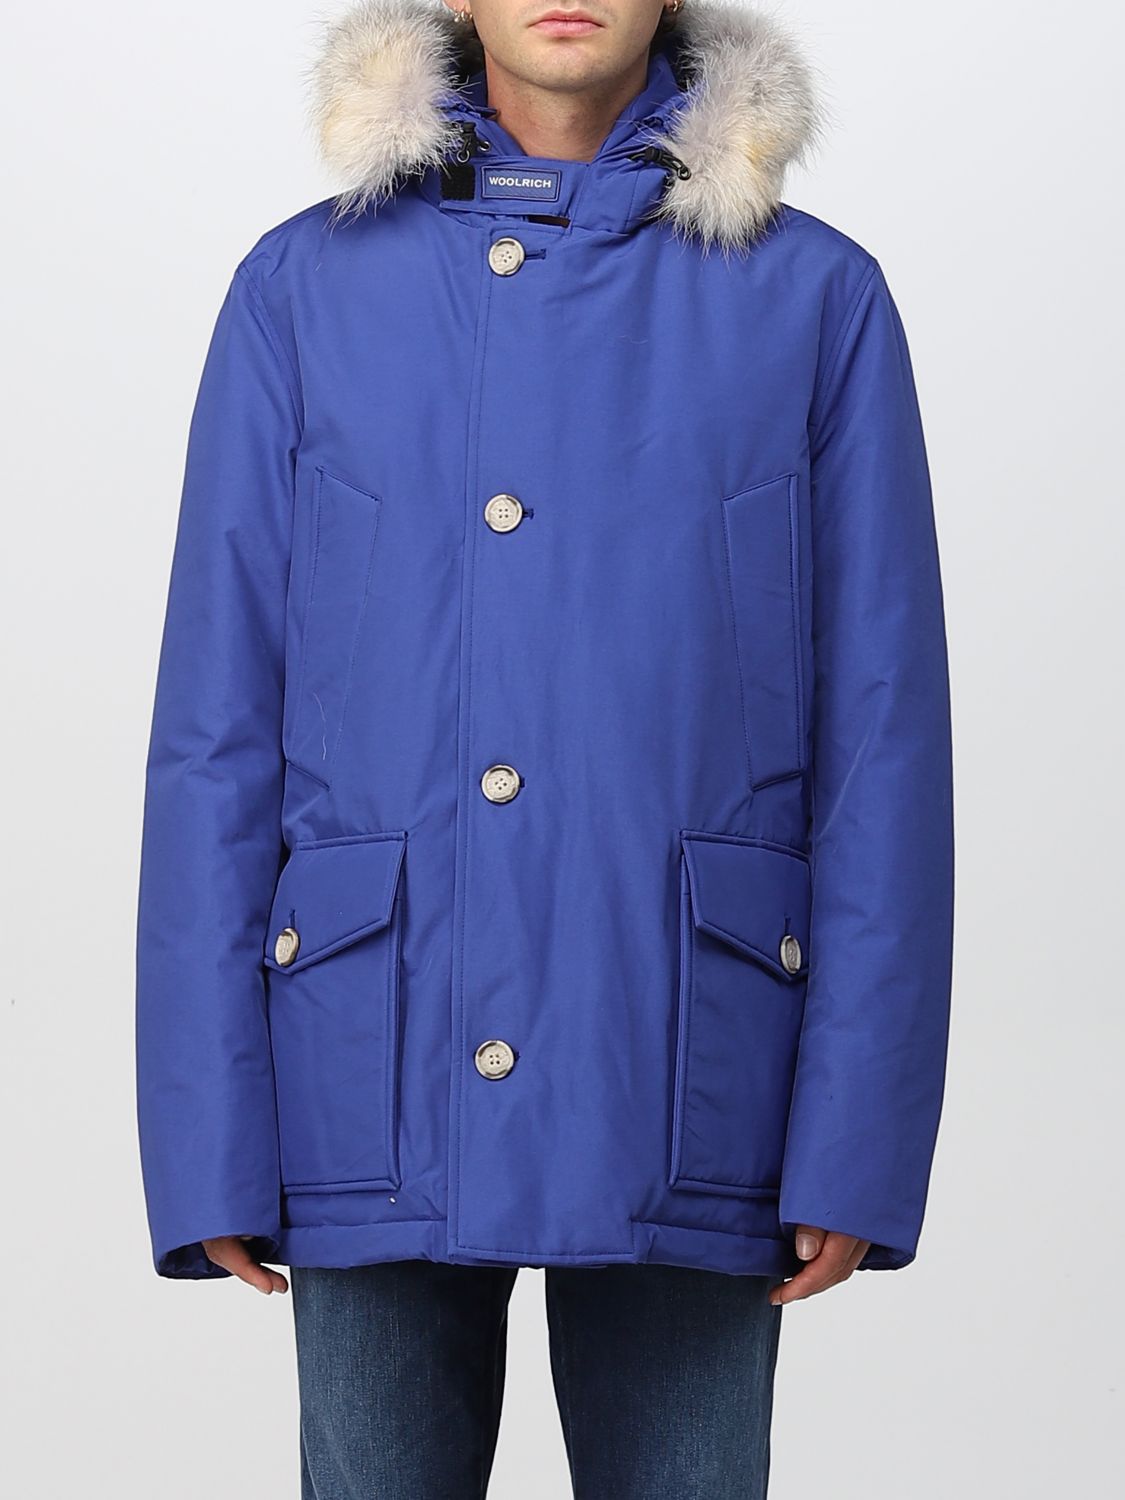 Hoop van tand gastvrouw WOOLRICH: jacket for man - Blue 1 | Woolrich jacket CFWOOU0484MRUT0001  online on GIGLIO.COM